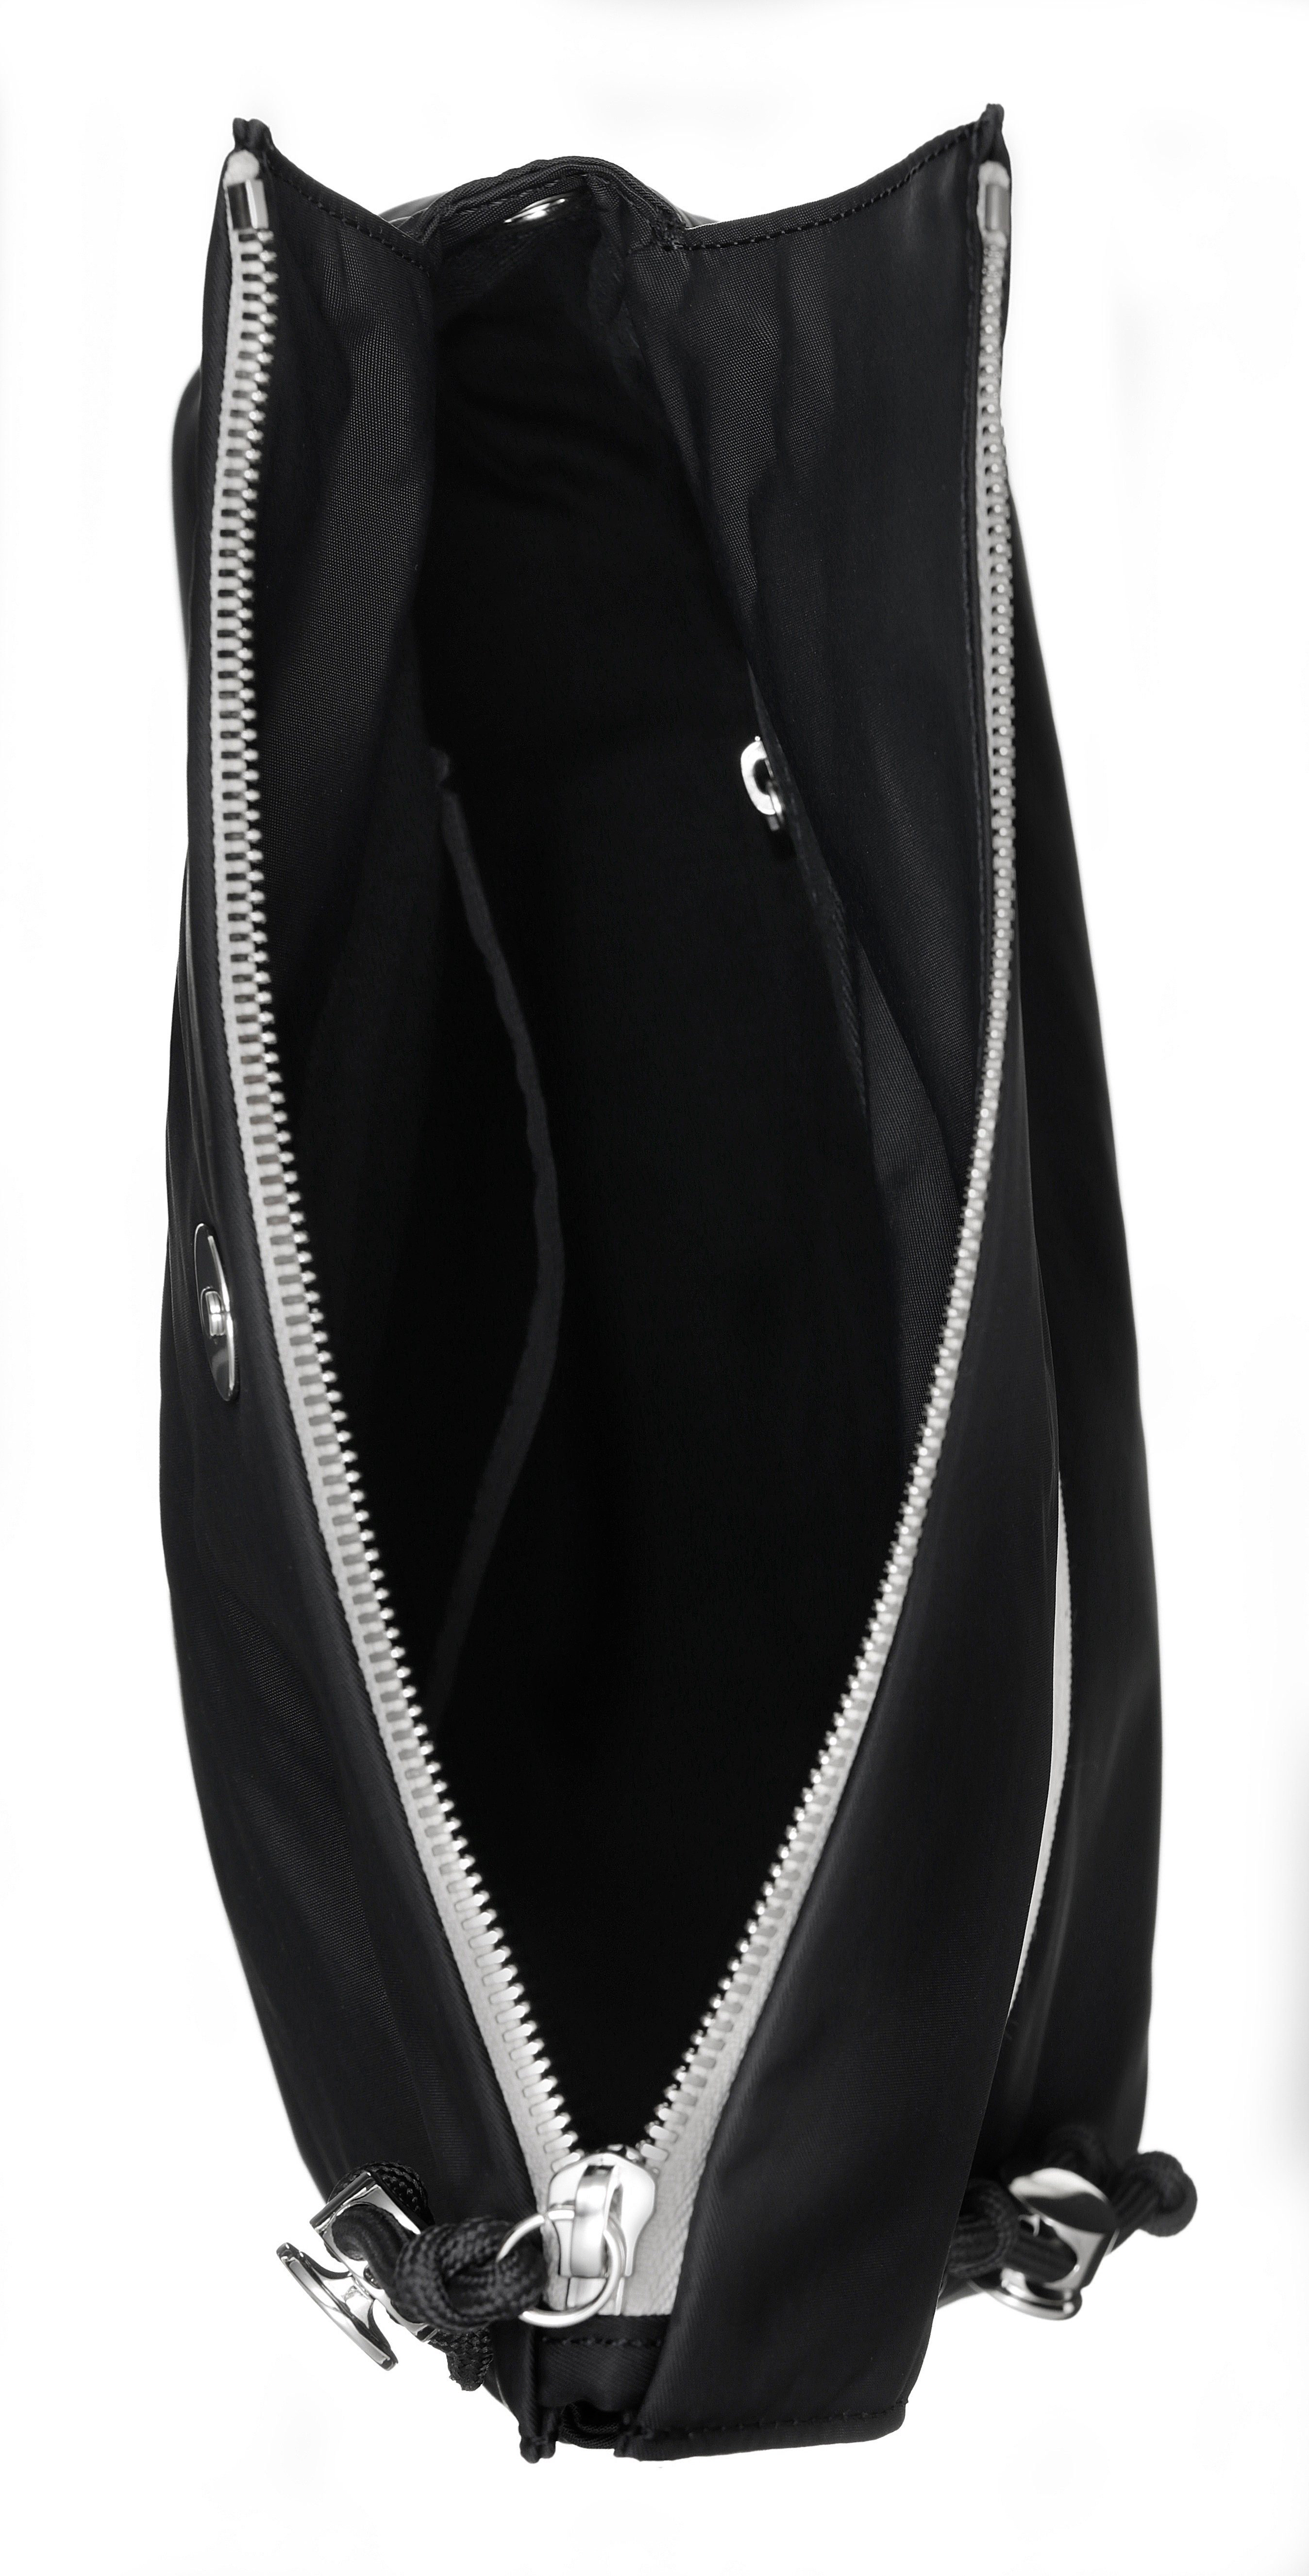 Damen Umhängetaschen Joop Jeans Umhängetasche lietissimo lani shoulderbag shz, mit modischem Logo Schriftzug auf dem Umhängeriem